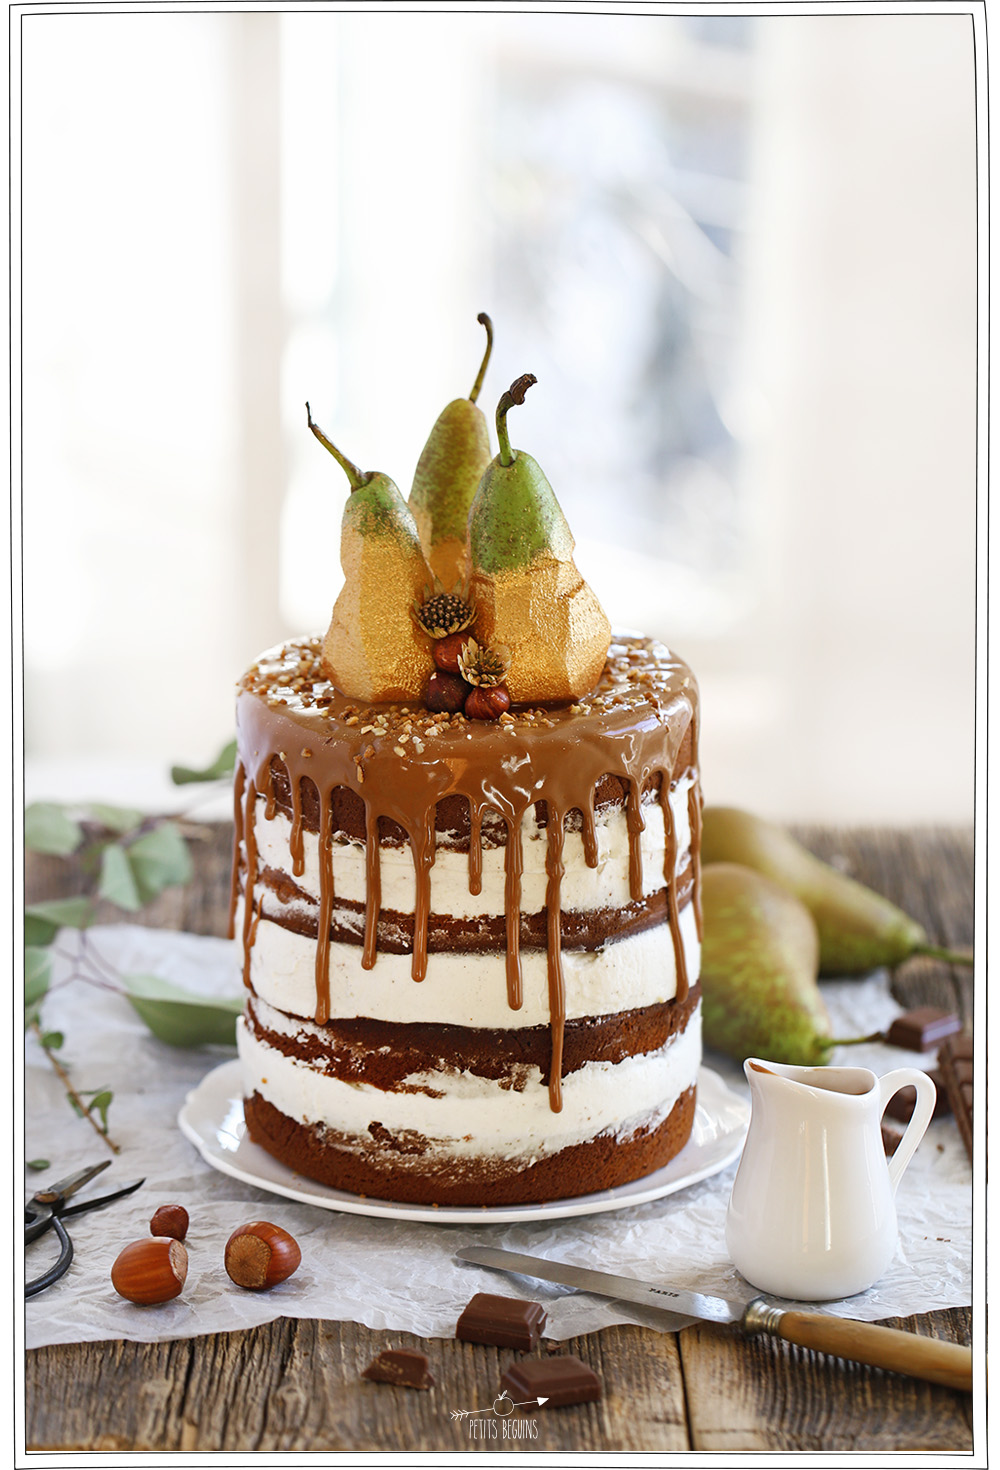 Gros gâteau facile - Poire Chocolat praliné vanille - Recette - Petits Béguins